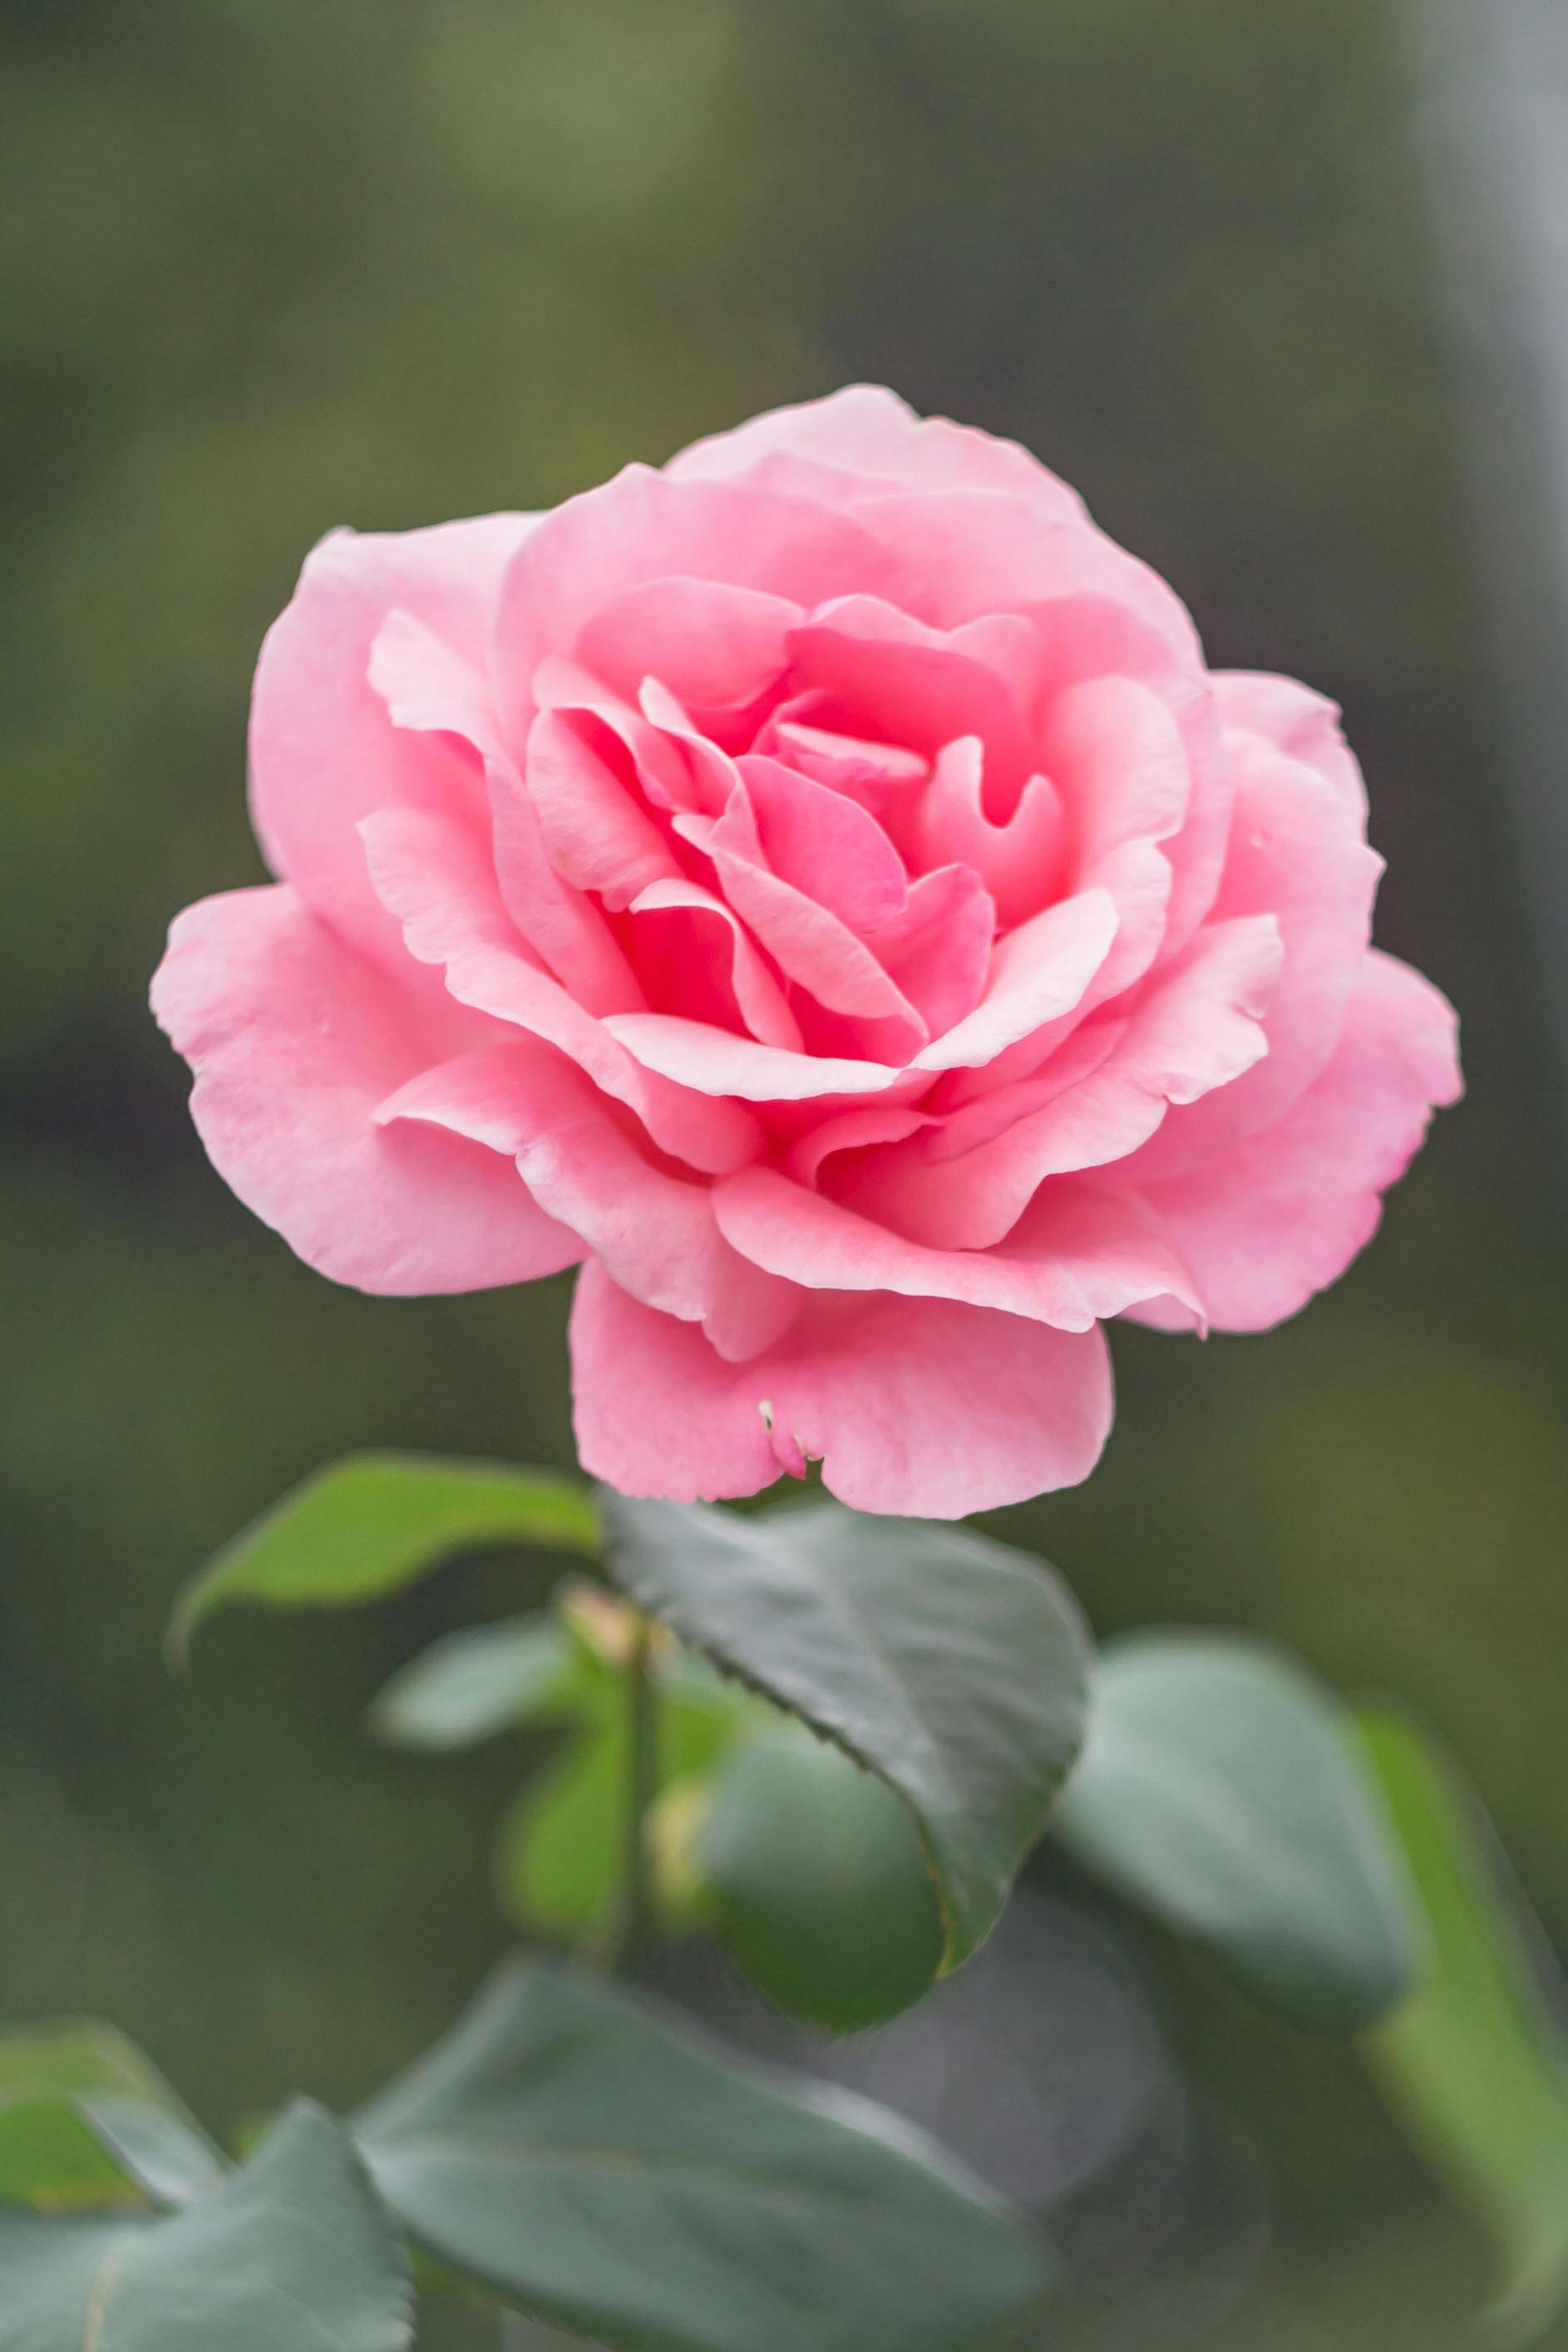 BST 99 Hình nền Hoa Hồng đẹp nhất gửi tặng người yêu